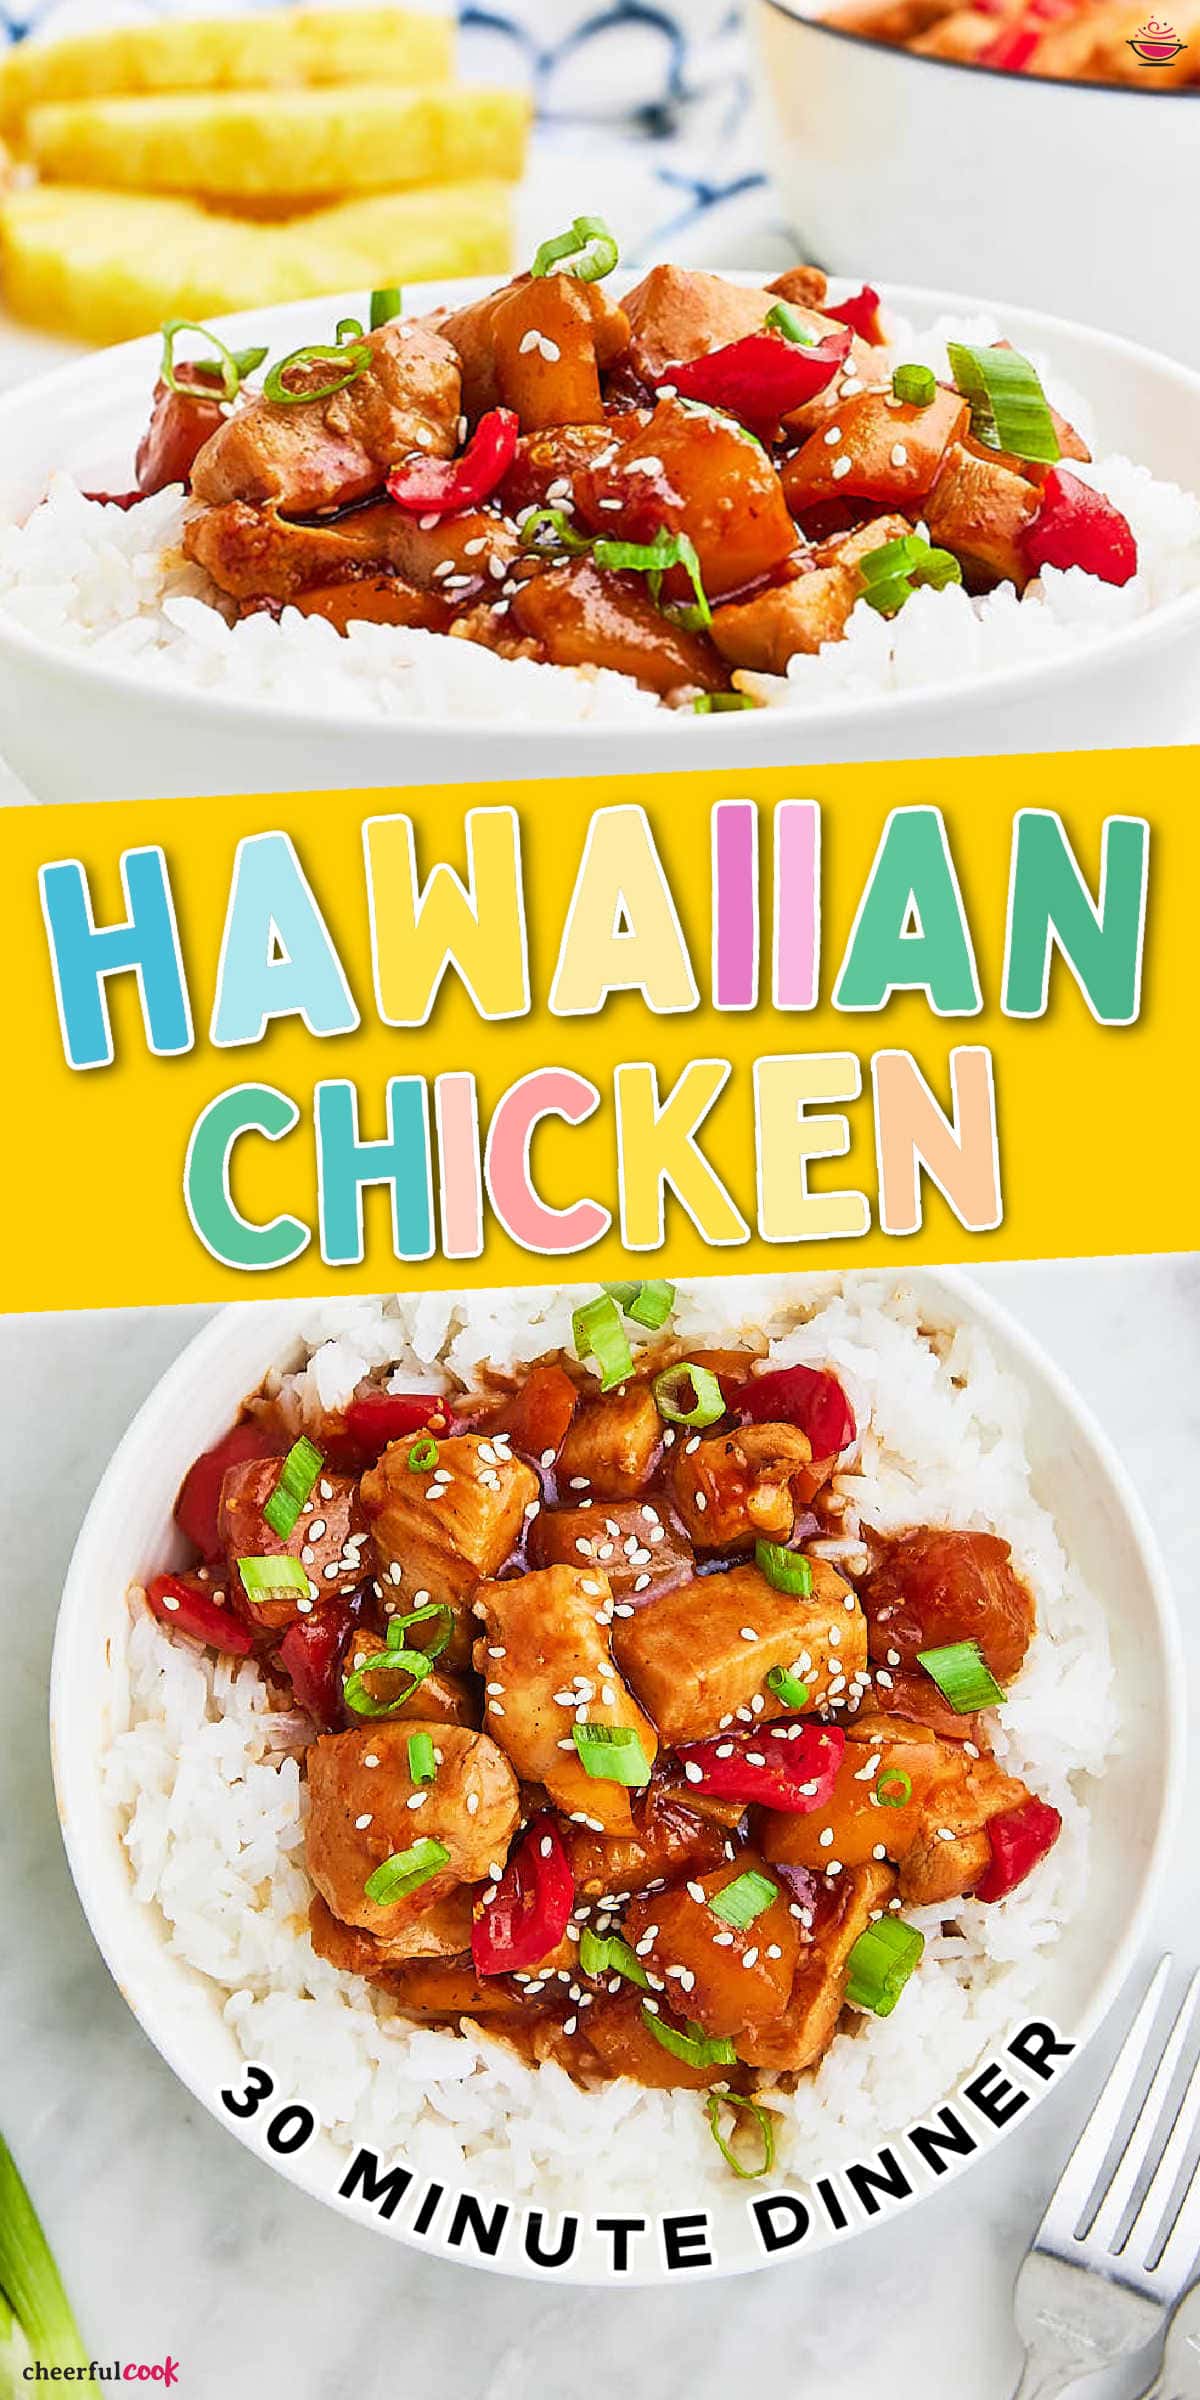 晚餐有热带捻夏威夷鸡肉食谱。多汁的鸡肉,甜的菠萝,和一个极漂亮的酱汁一起愉快的用餐,很容易在自己的厨房。# cheerfulcook # Hawaiianchicken # chickendinner # weeknightdinner # easydinner #通过江南娱乐app网址苹果@cheerfulcook chickenrecipesgydF4y2Ba